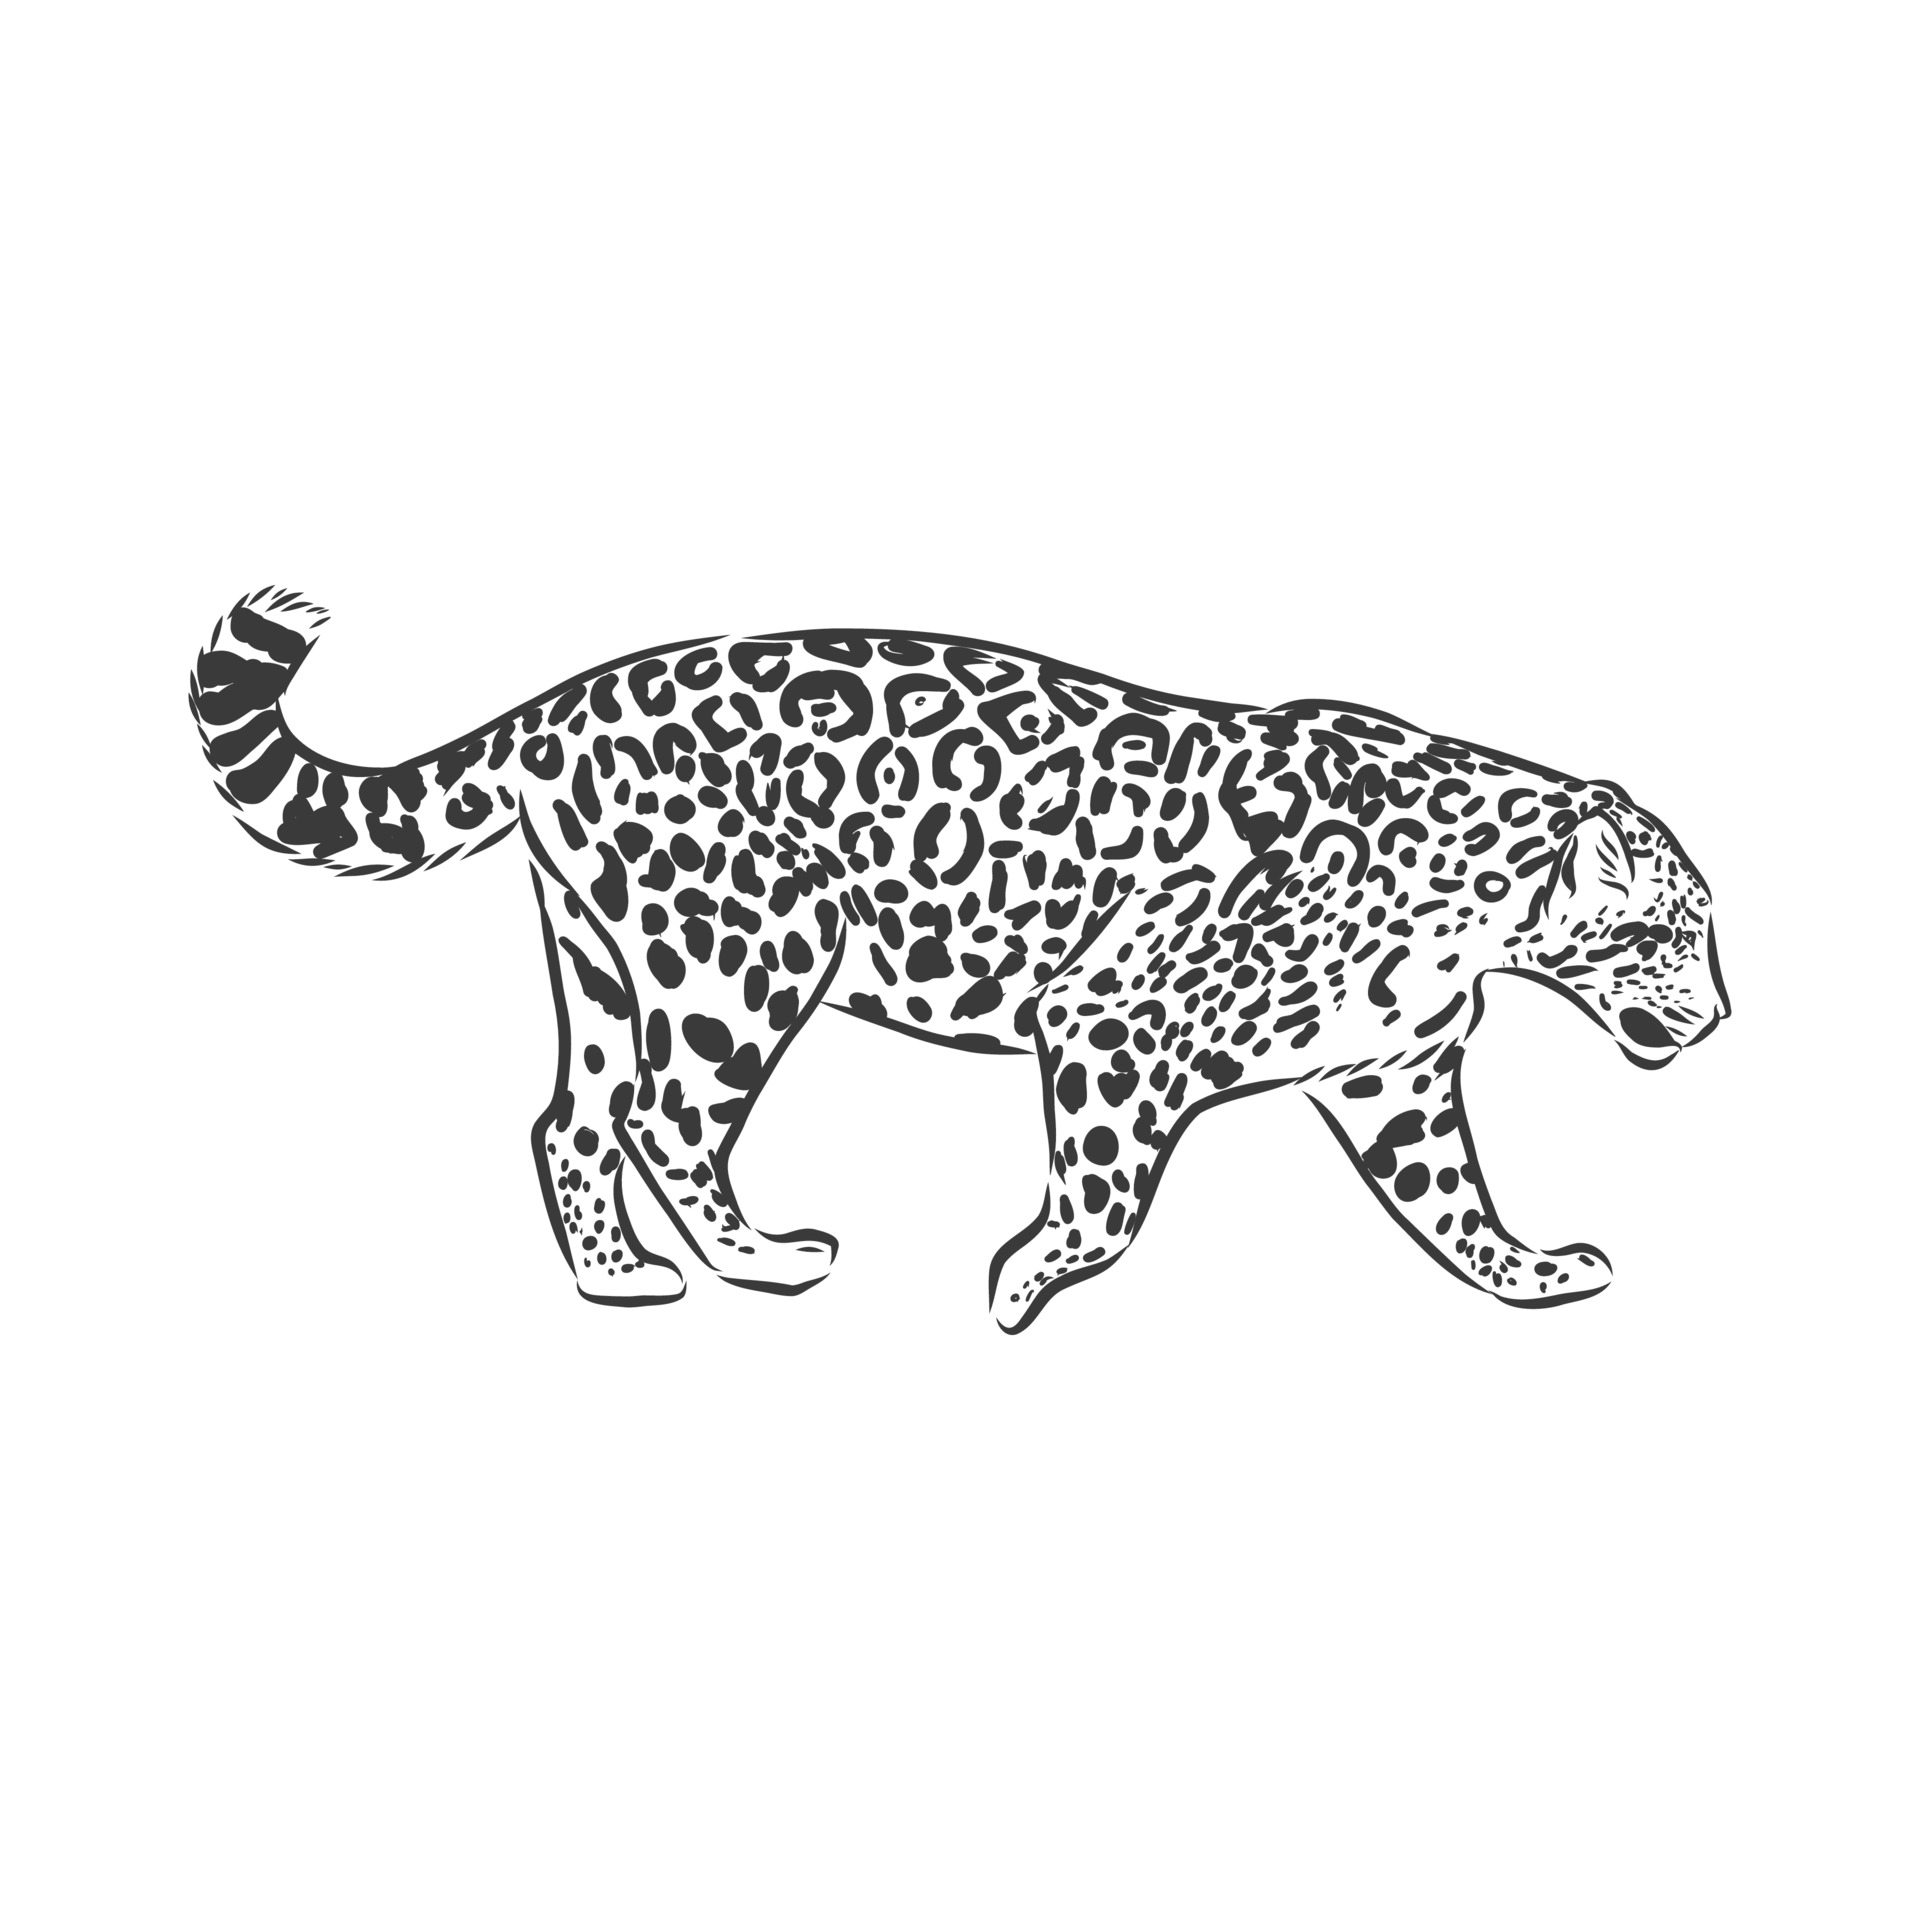 Jaguar. Hand drawn sketch illustration isolated on white background. Jaguar  animal, vector sketch illustration 2286216 Vector Art at Vecteezy